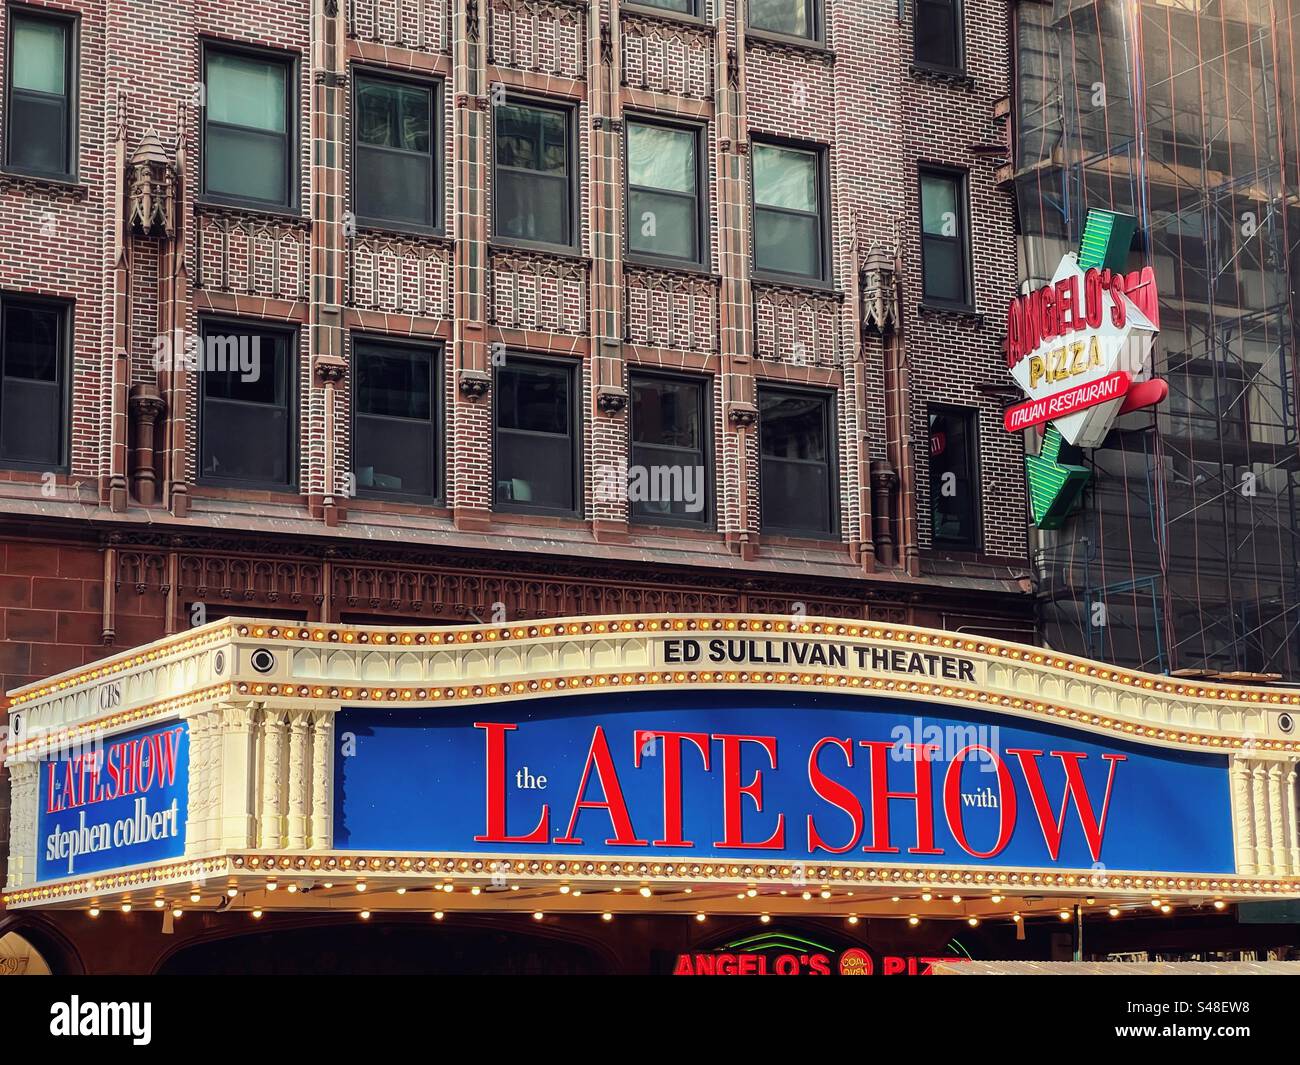 Davanti al teatro ed Sullivan di New York che pubblicizza il Late Show con Stephen Colbert Foto Stock